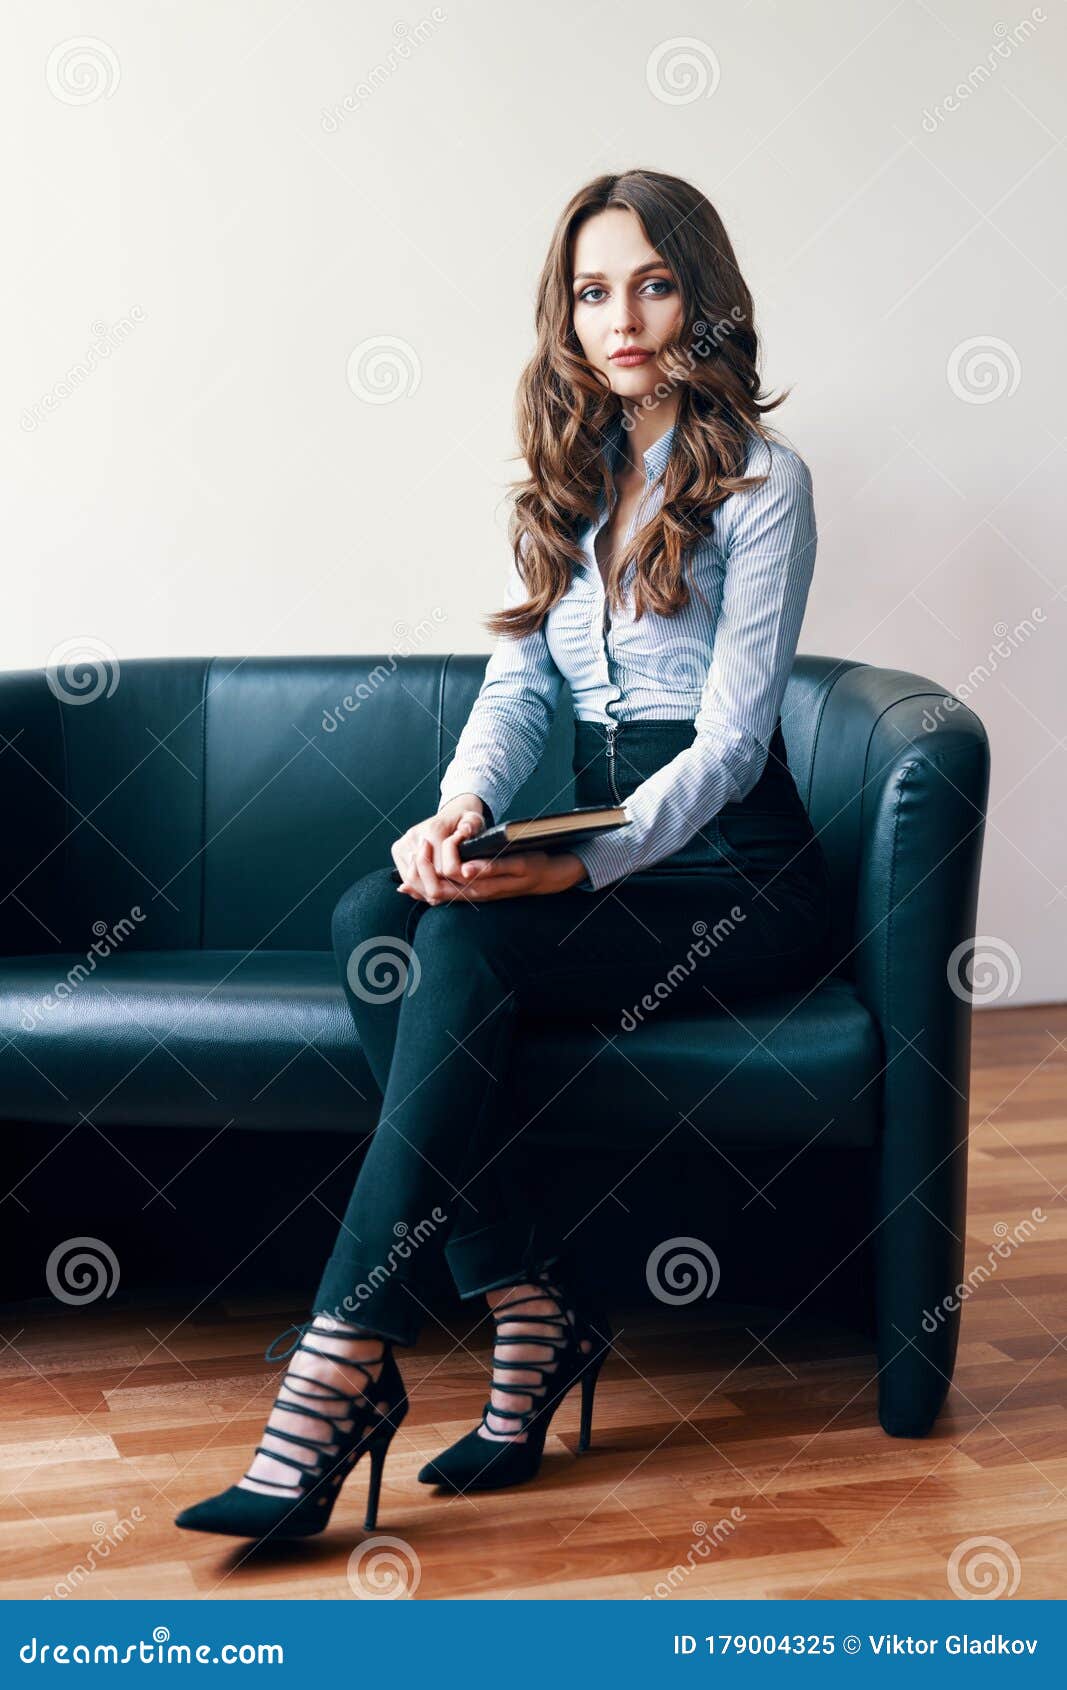 坐在沙发上的美丽女性心理学家画像库存图片 图片包括有女性 工作 纵向 财务 医生 建议